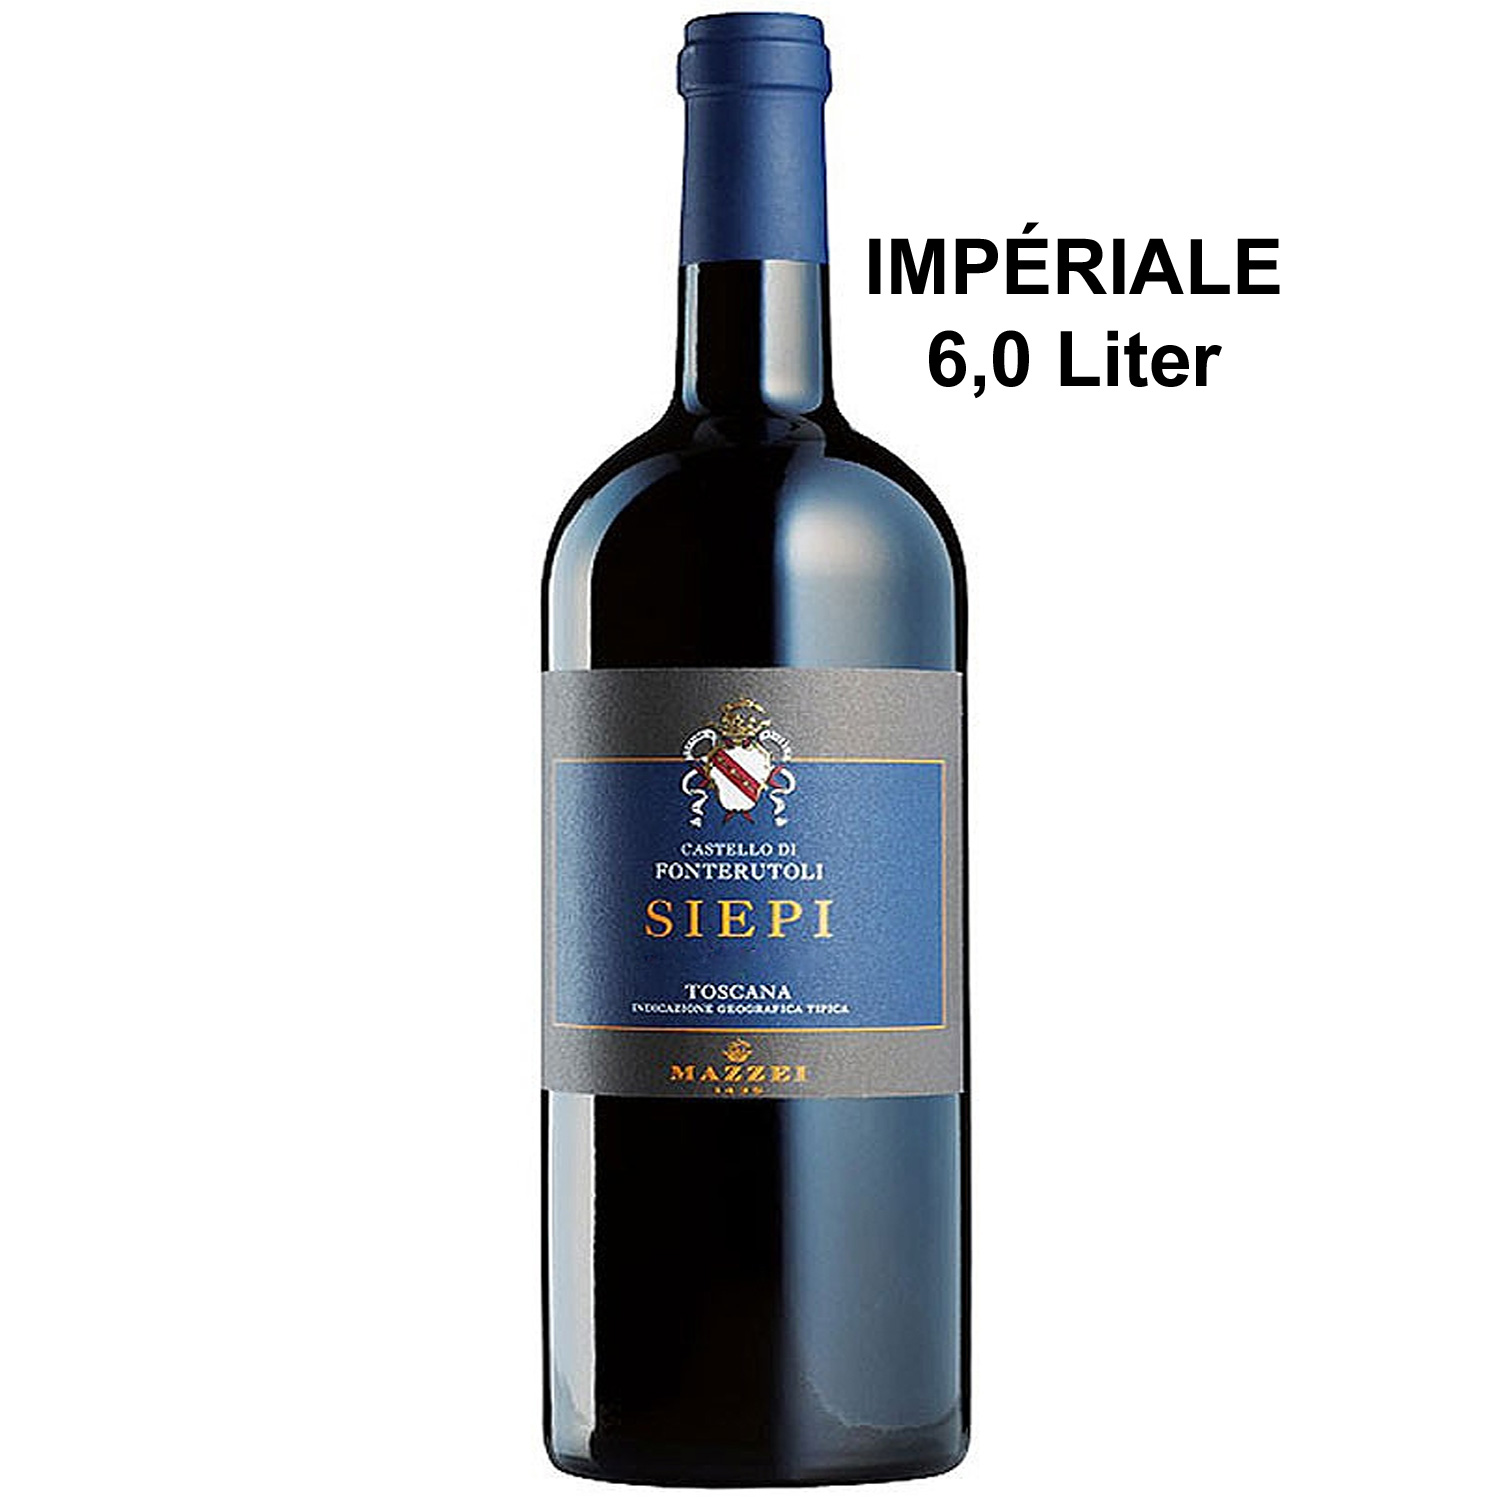 Italienischer Rotwein Mazzei Siepi 2015 Imperiale 